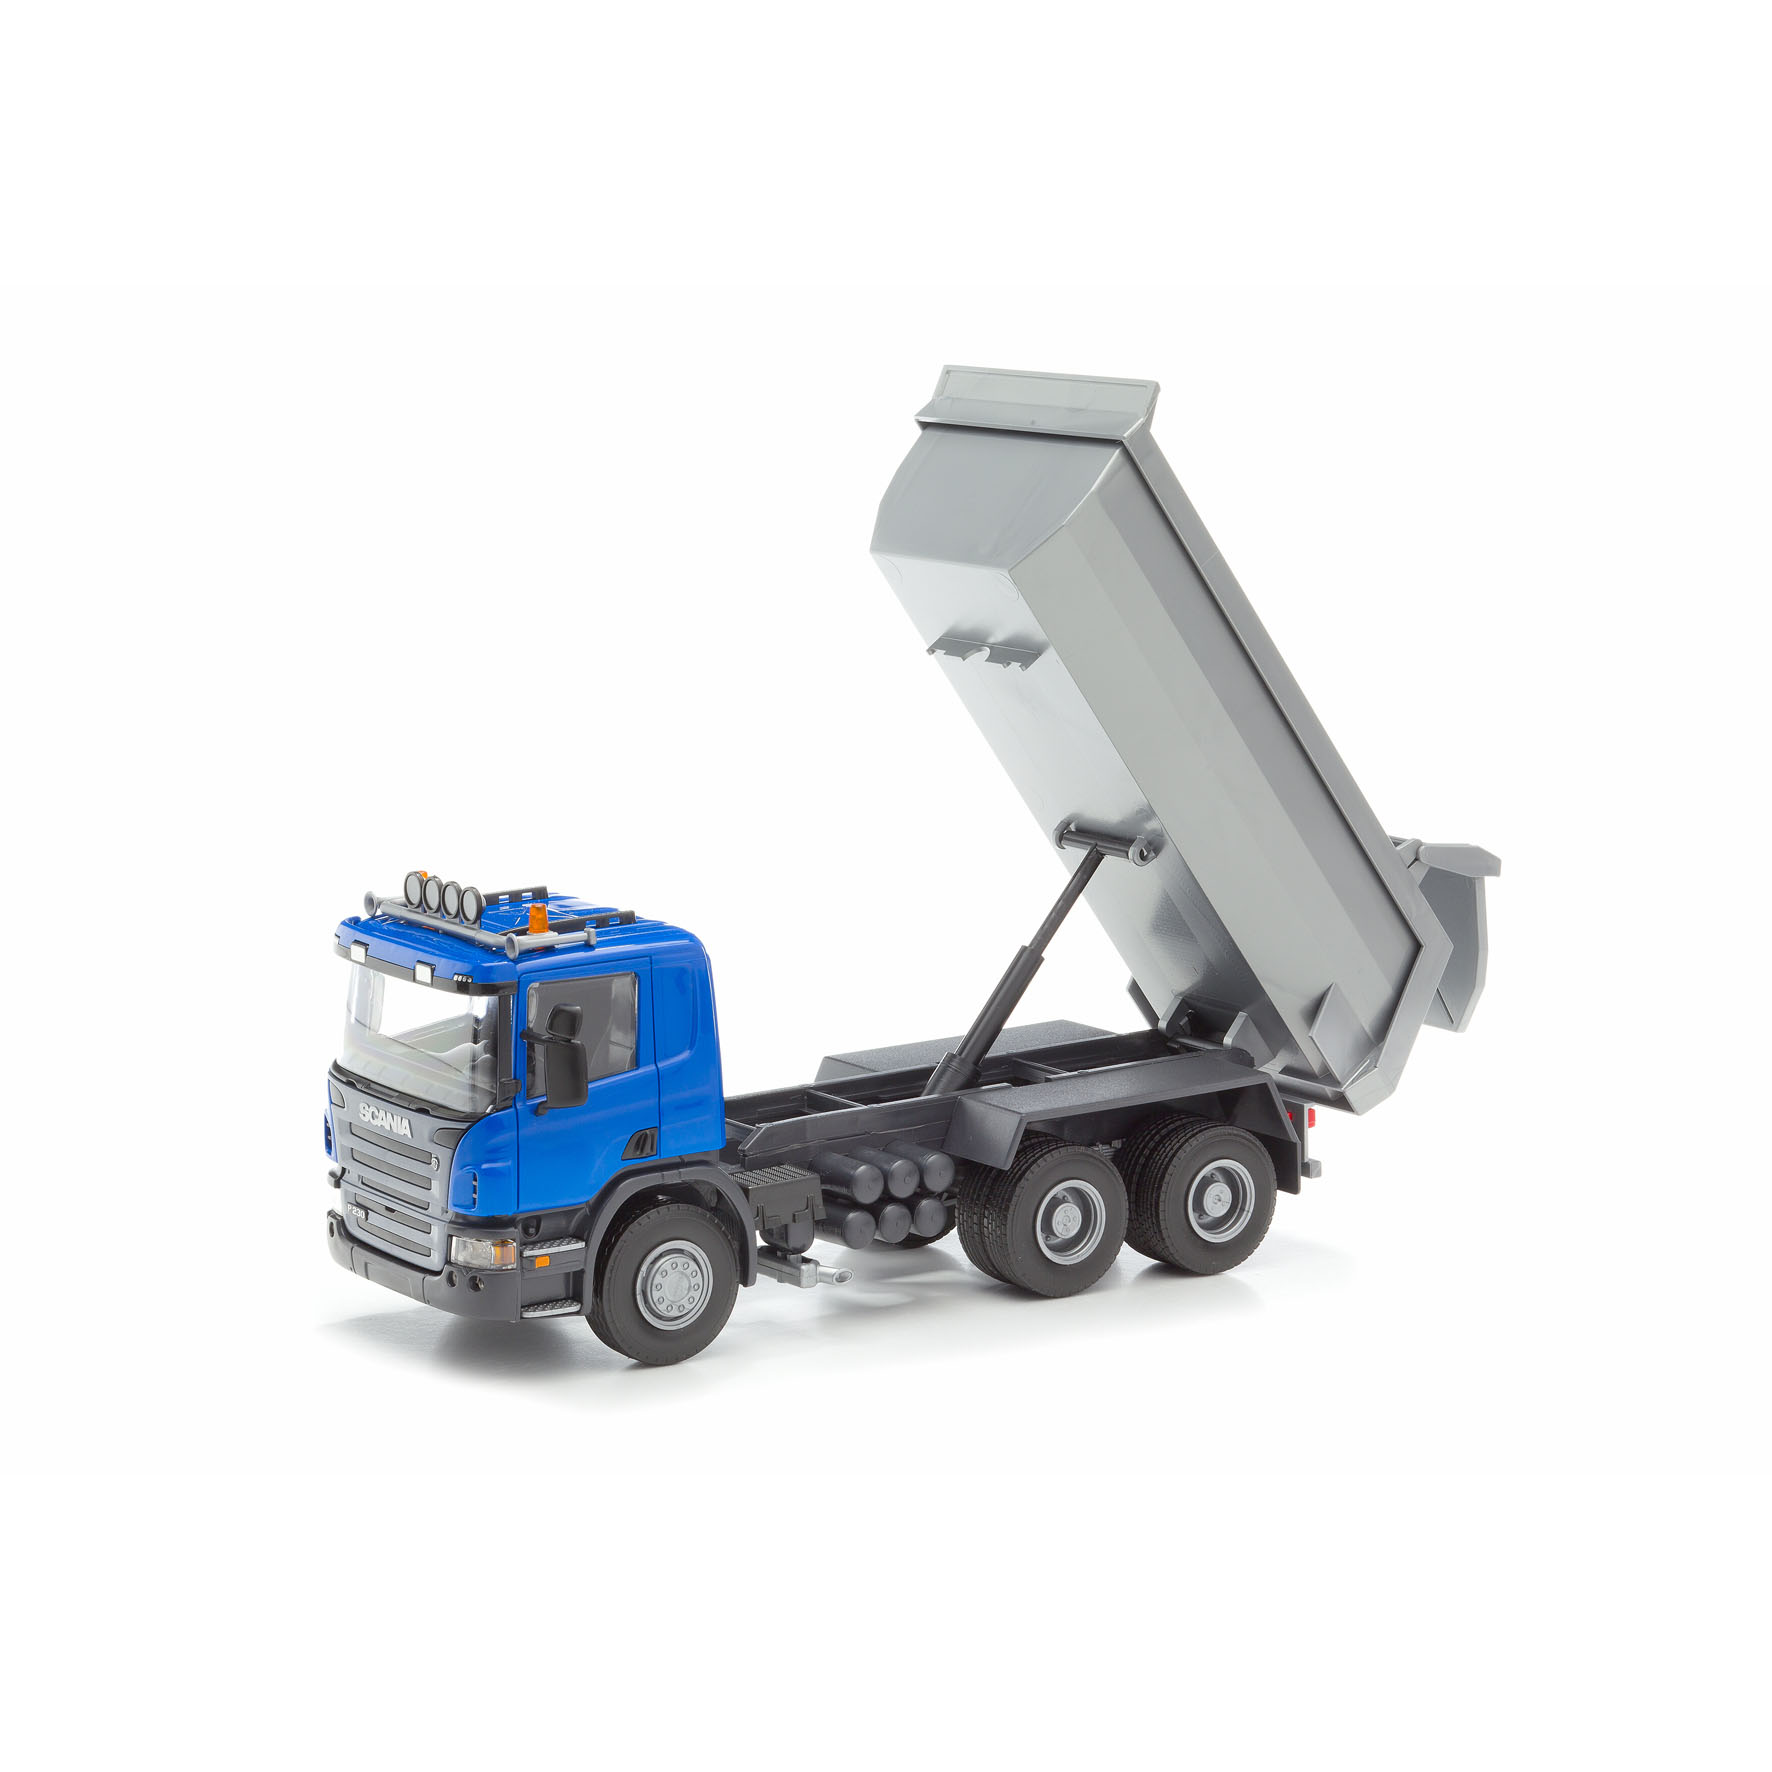 Toy trucks emek toy car waste truck scania 3-axle blue 1:25